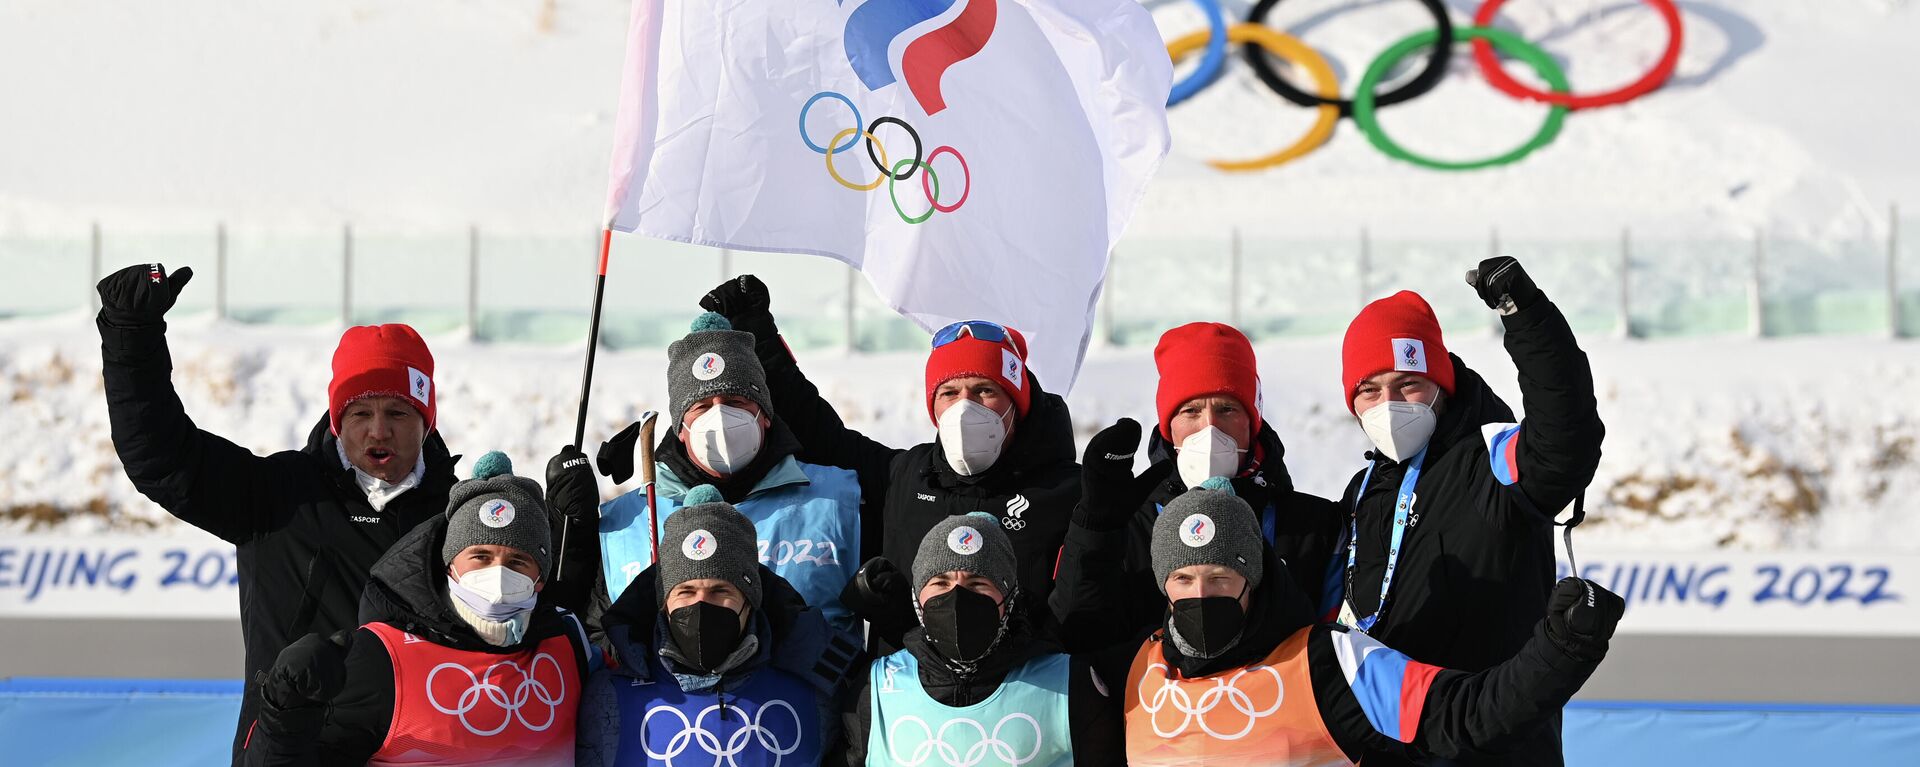 Los biatletas rusos conquistaron medallas de bronce en el relevo masculino 4 x 7,5 km en los Juegos Olímpicos de Invierno de Pekín 2022 - Sputnik Mundo, 1920, 15.02.2022